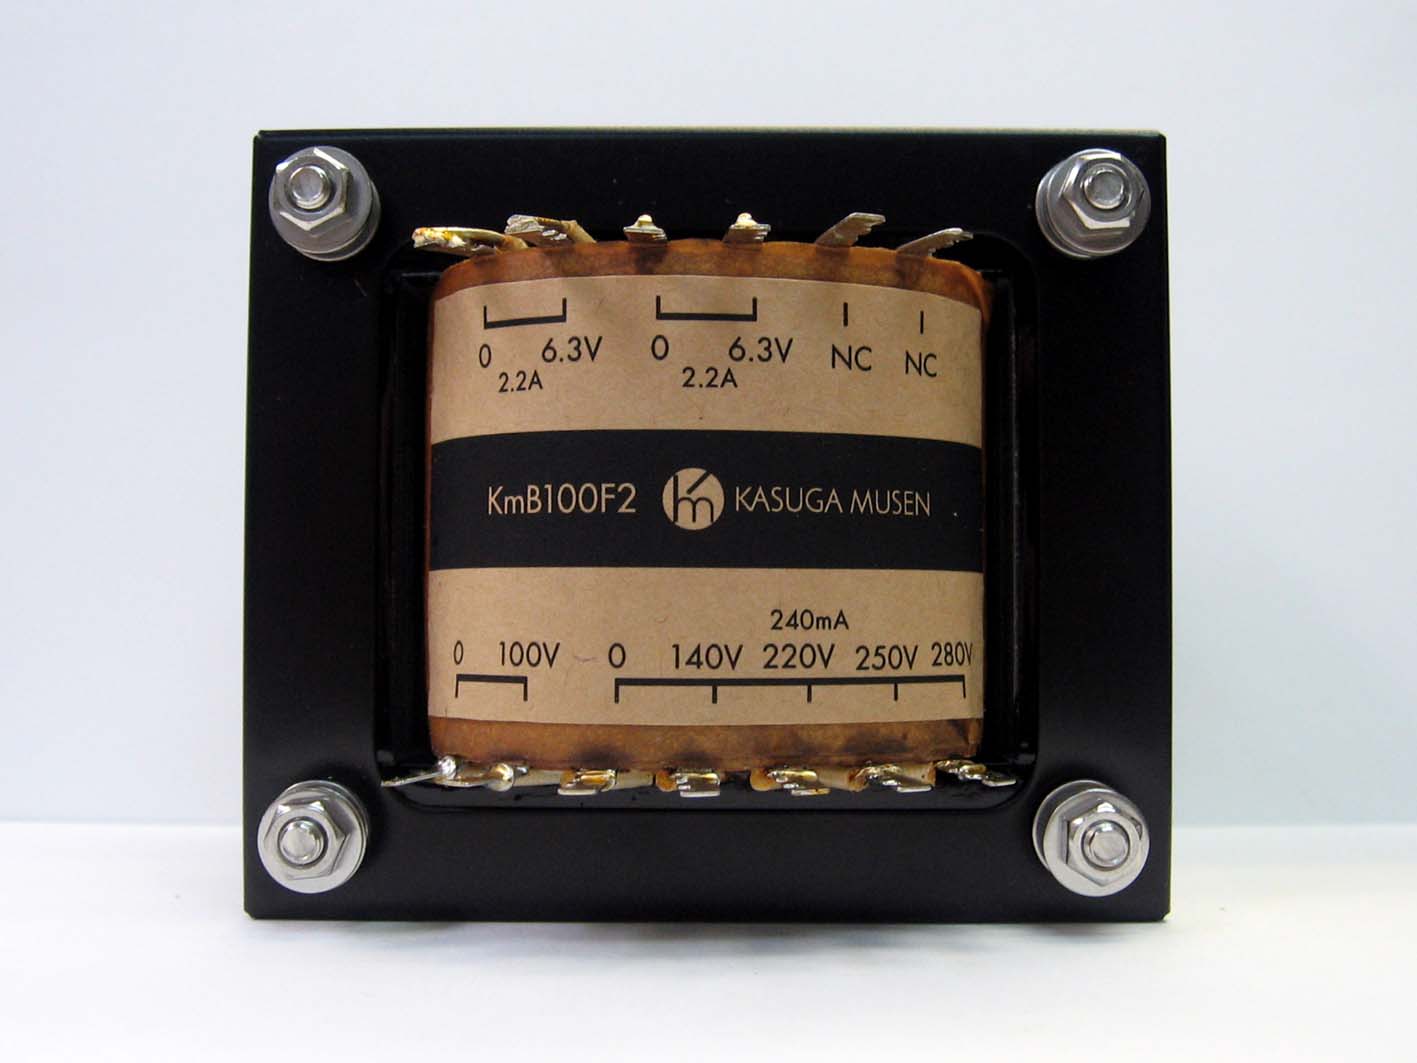 オリジナル電源トランス KmB100F2の画像です。